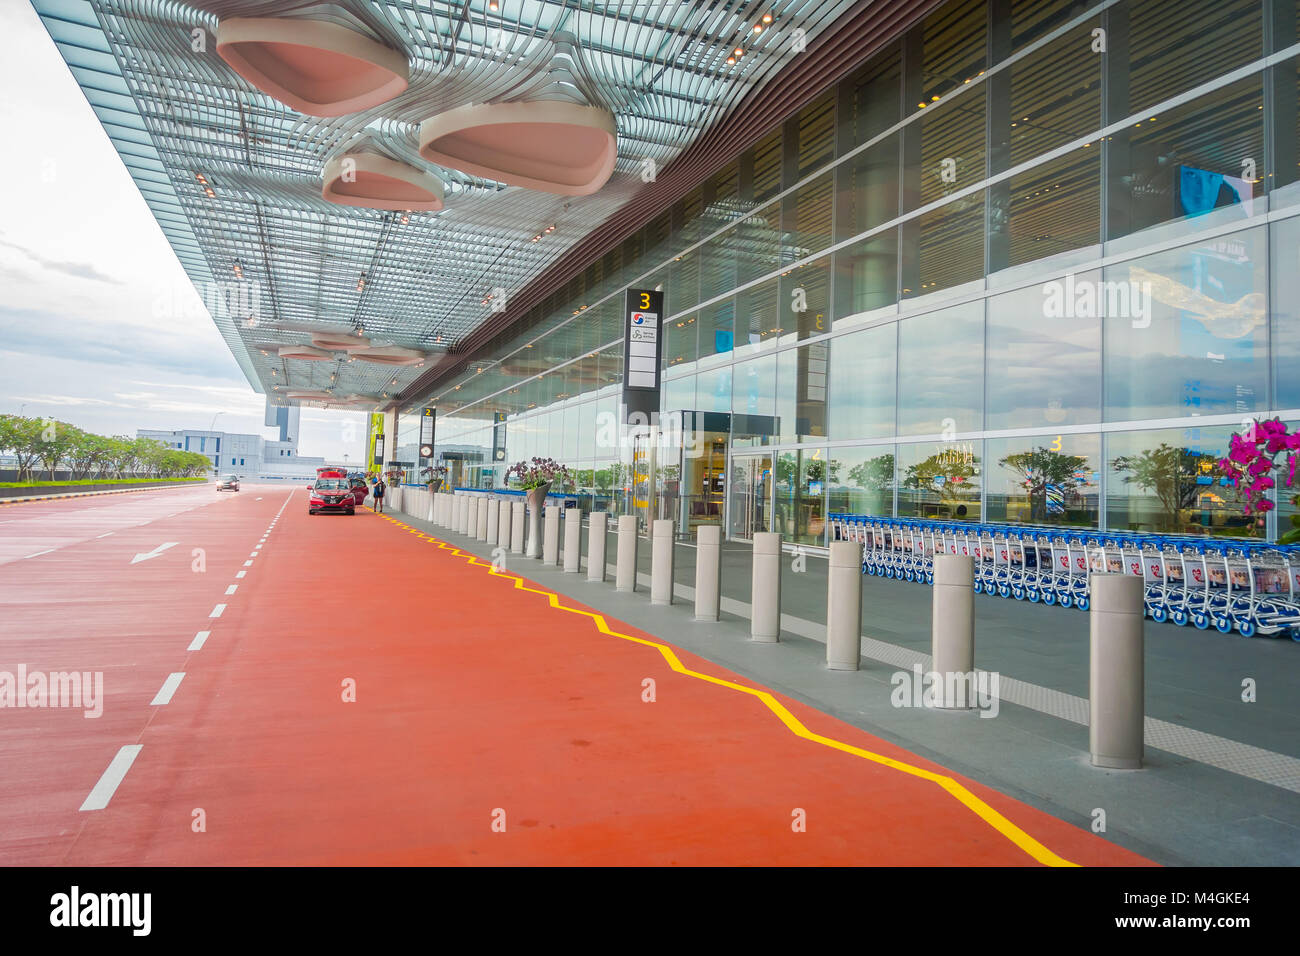 SINGAPORE, Singapore - 30 gennaio 2018: vista esterna di un taxi in attesa al di fuori del terminal presso l'Aeroporto Changi di Singapore il peccato , classificato da Skytrax il miglior aeroporto del mondo nel 2016 Foto Stock